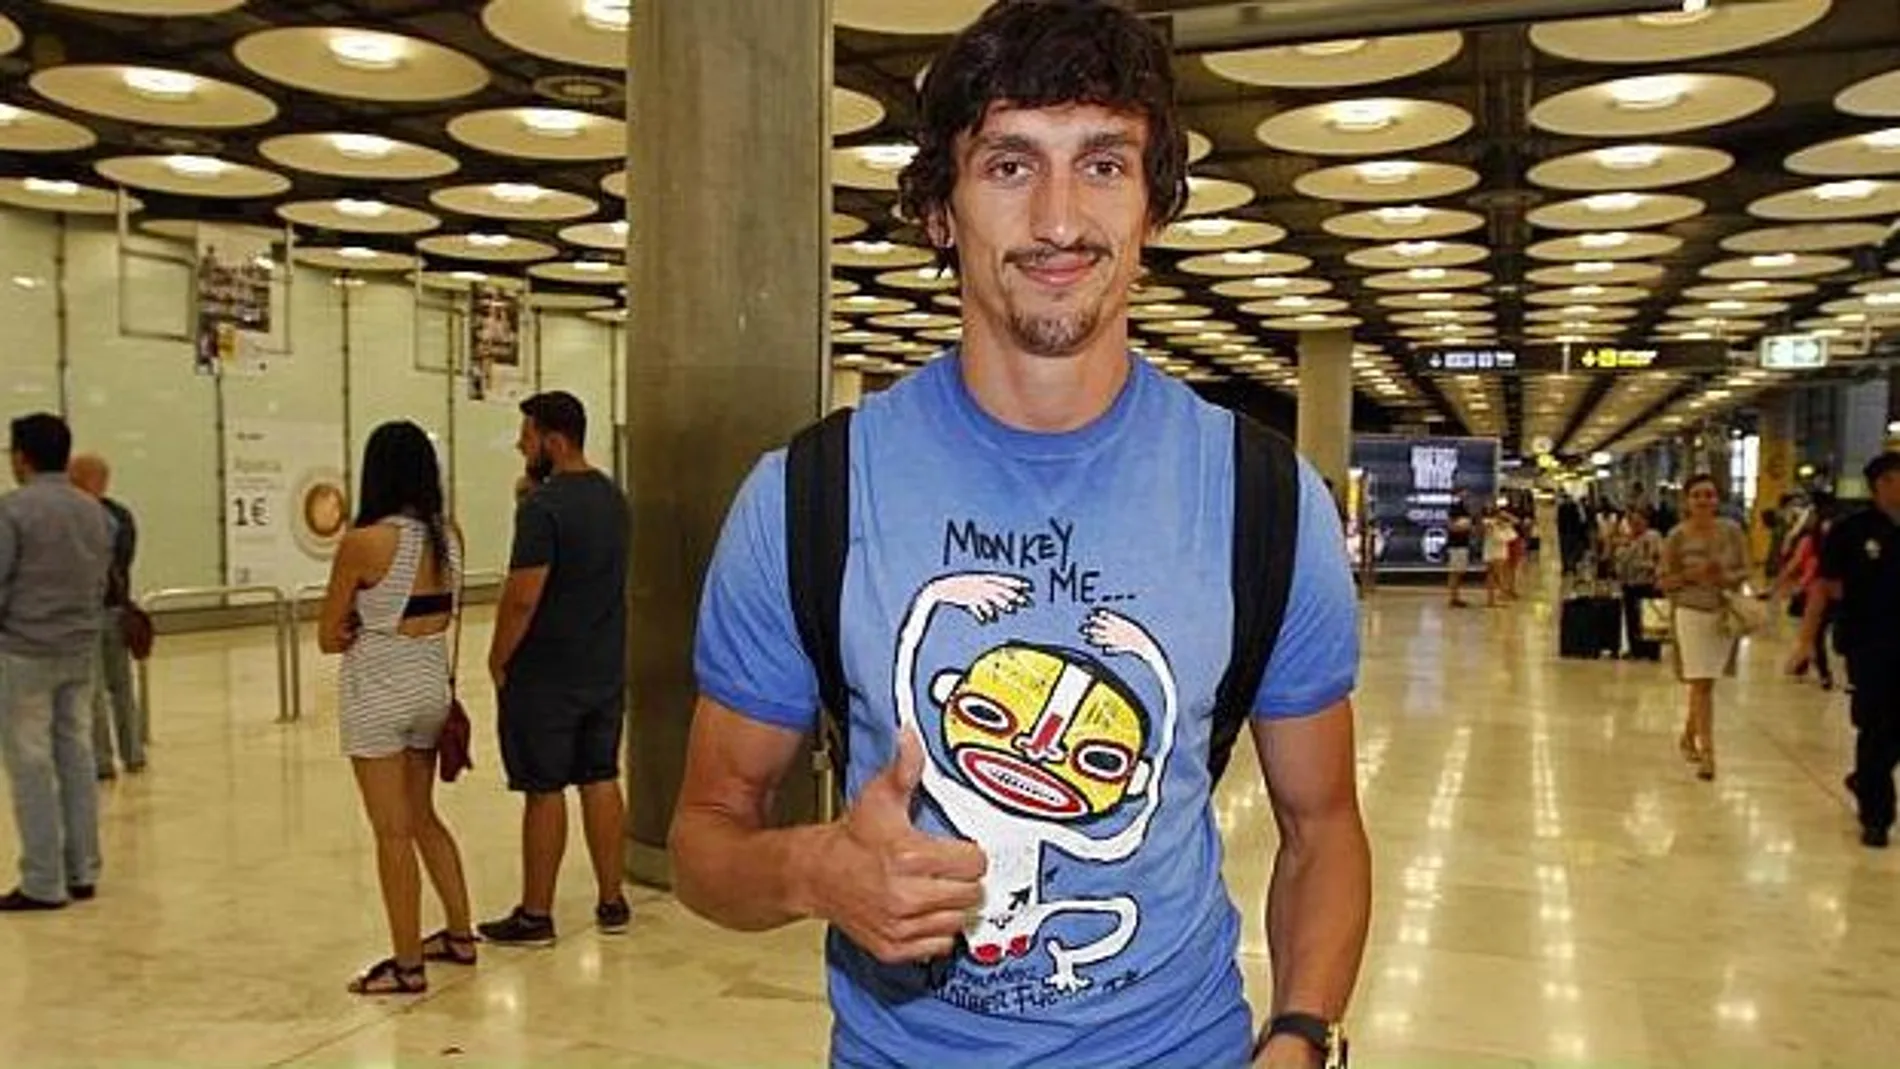 Stefan Savic, a su llegada al aeropuerto Adolfo Suárez-Barajas